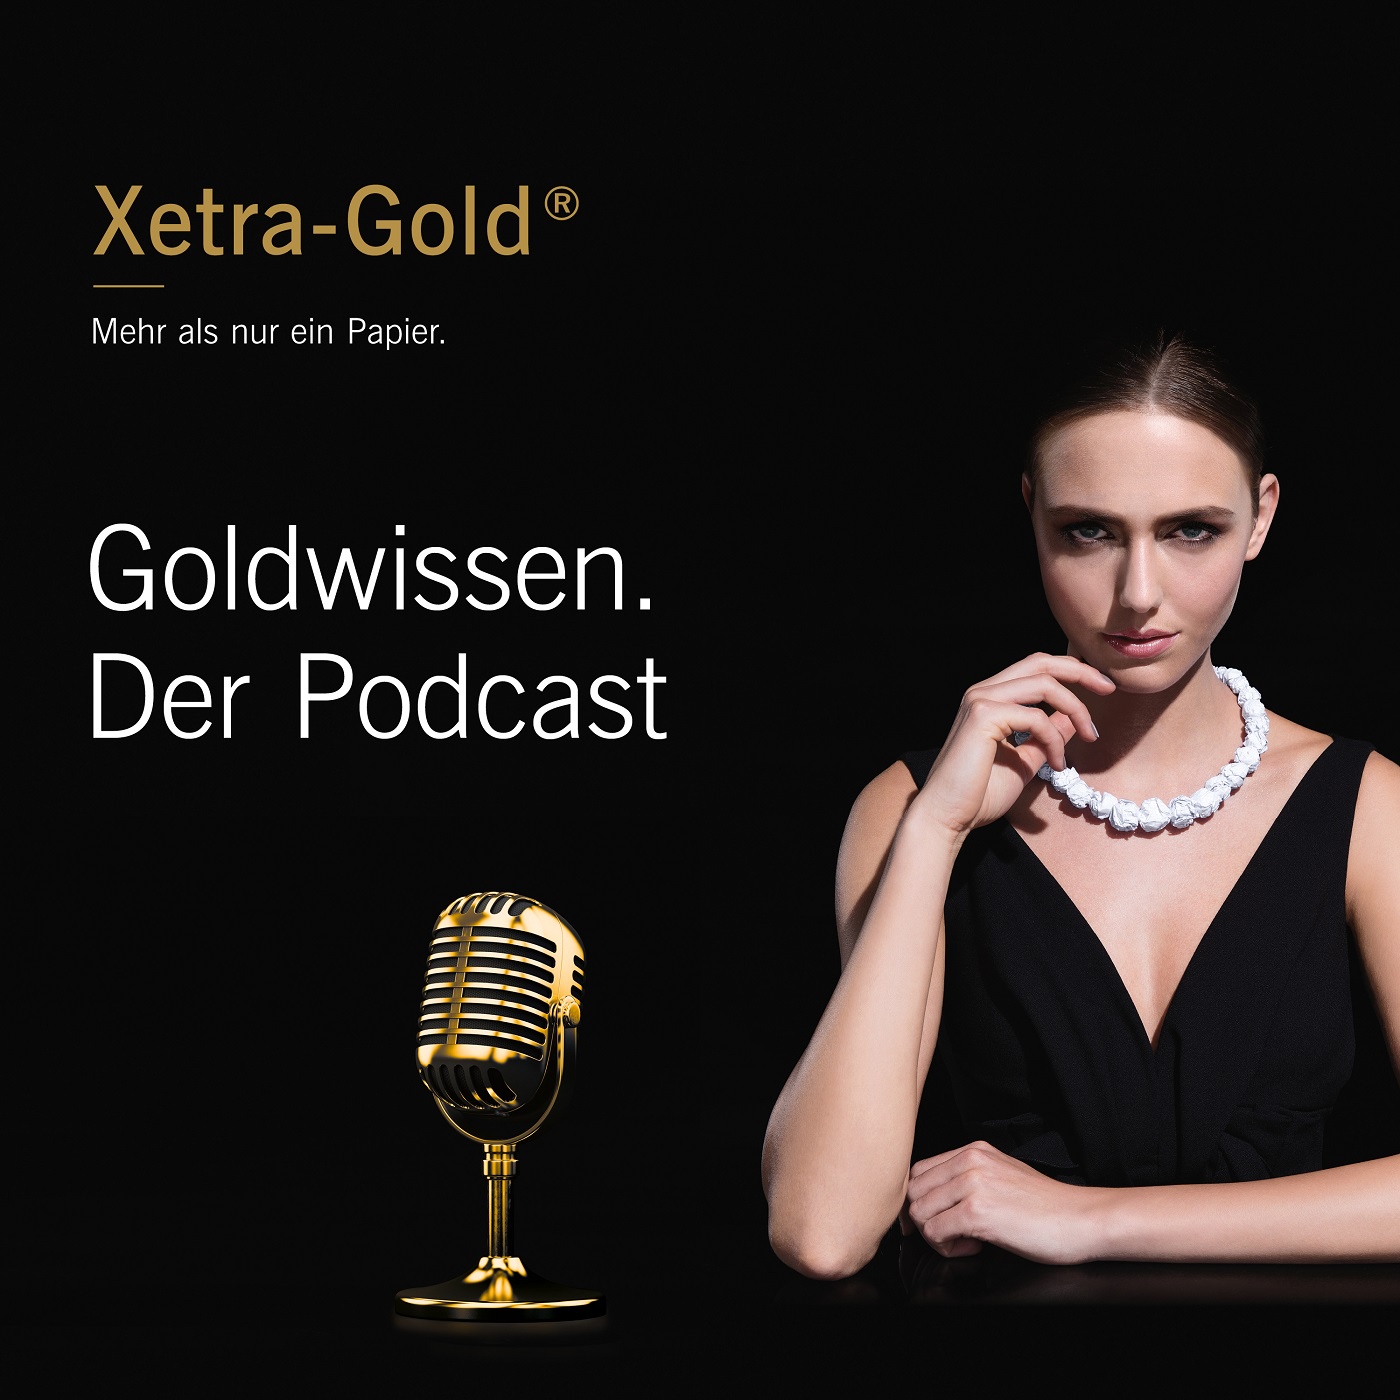 Goldwissen von Xetra-Gold. Der Podcast